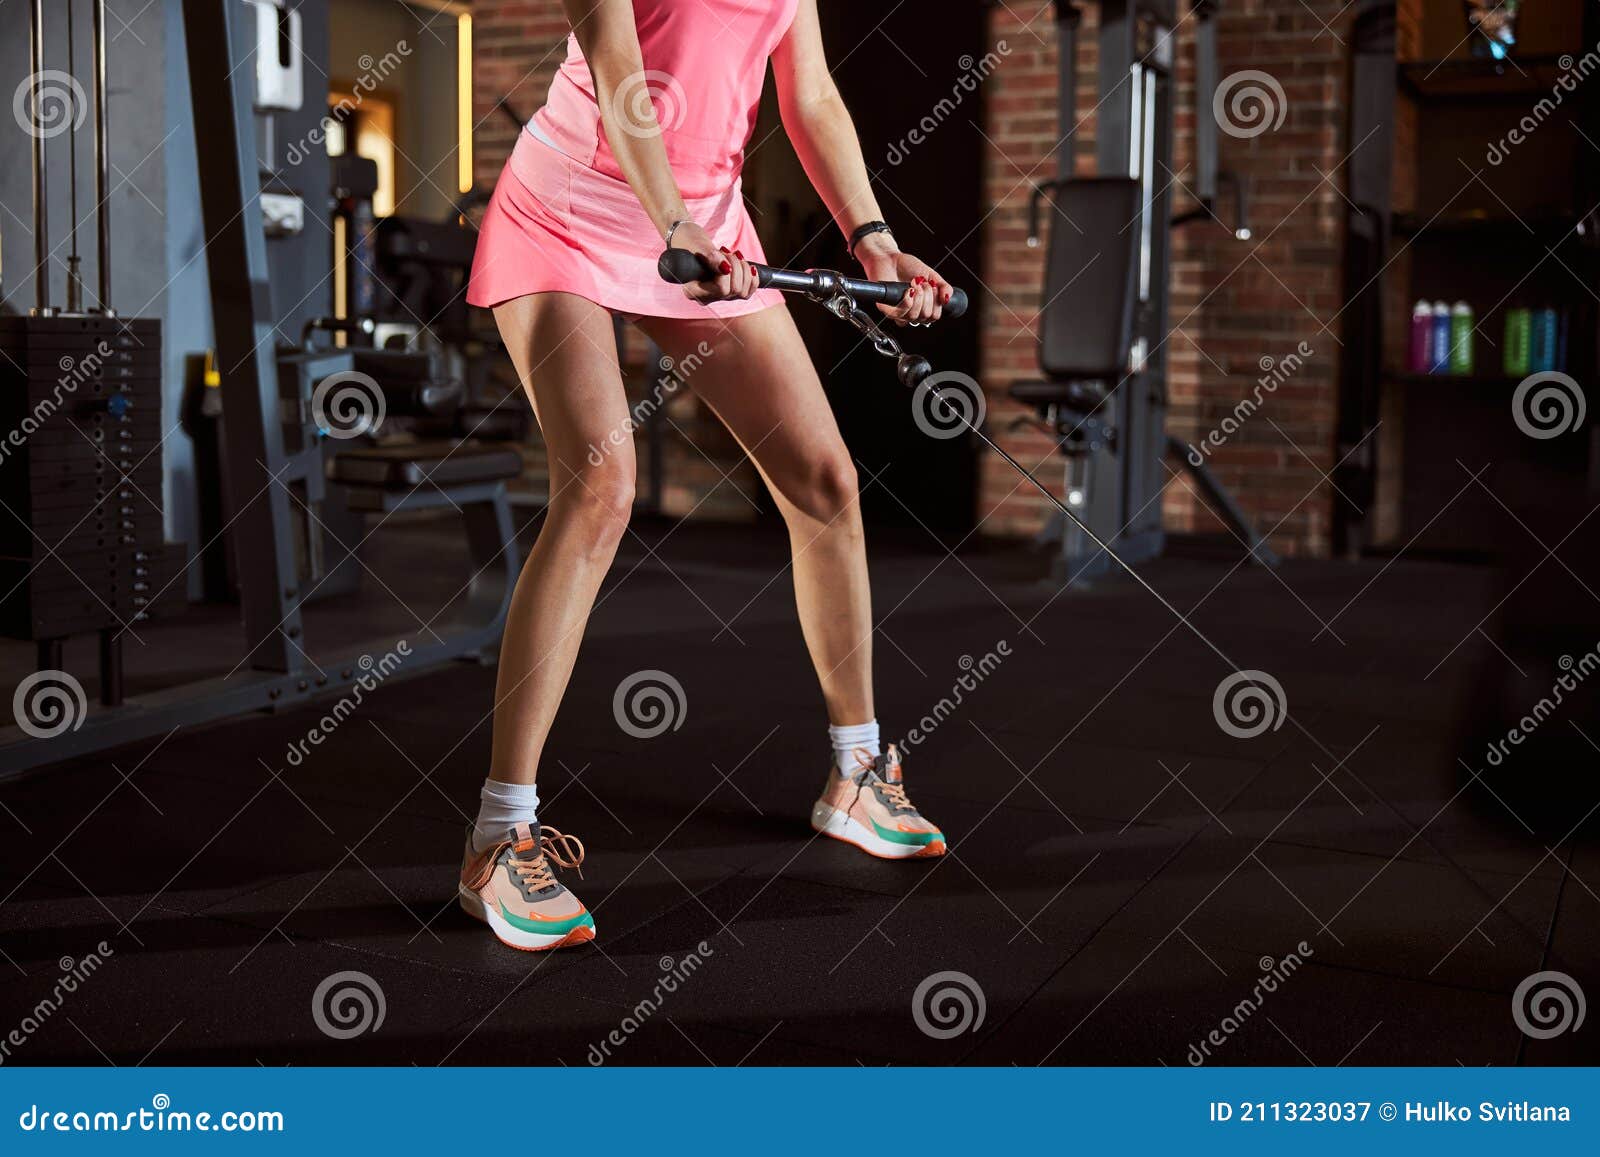 https://thumbs.dreamstime.com/z/fit-lady-pink-outfit-hacer-ejercicio-en-el-gimnasio-foto-recortada-de-un-cuerpo-inferior-mujer-deportiva-haciendo-con-equipo-211323037.jpg